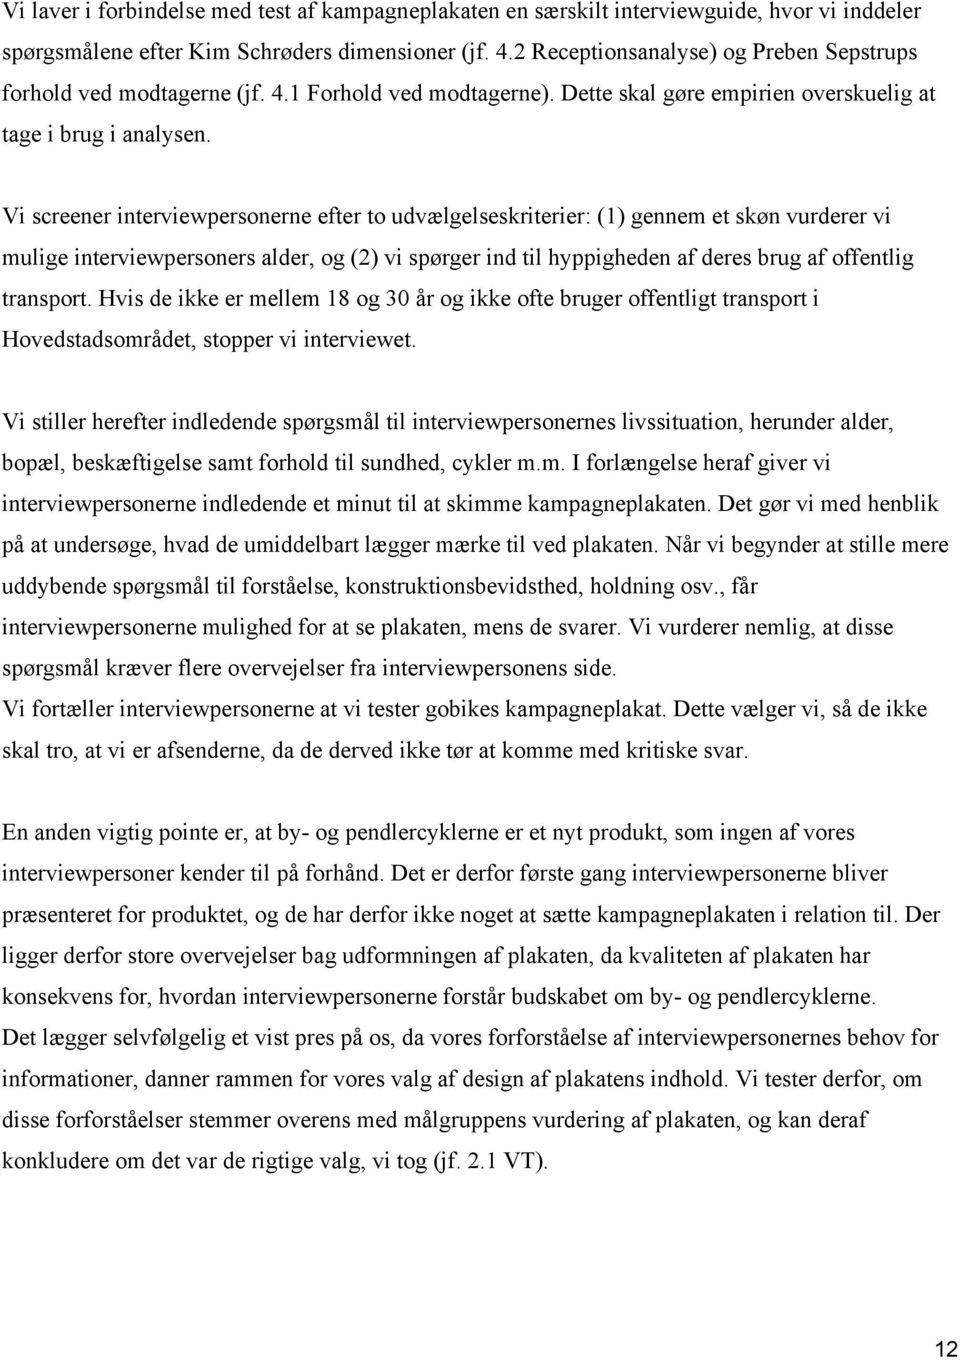 Københavns nye by-og pendlercykler - PDF Free Download